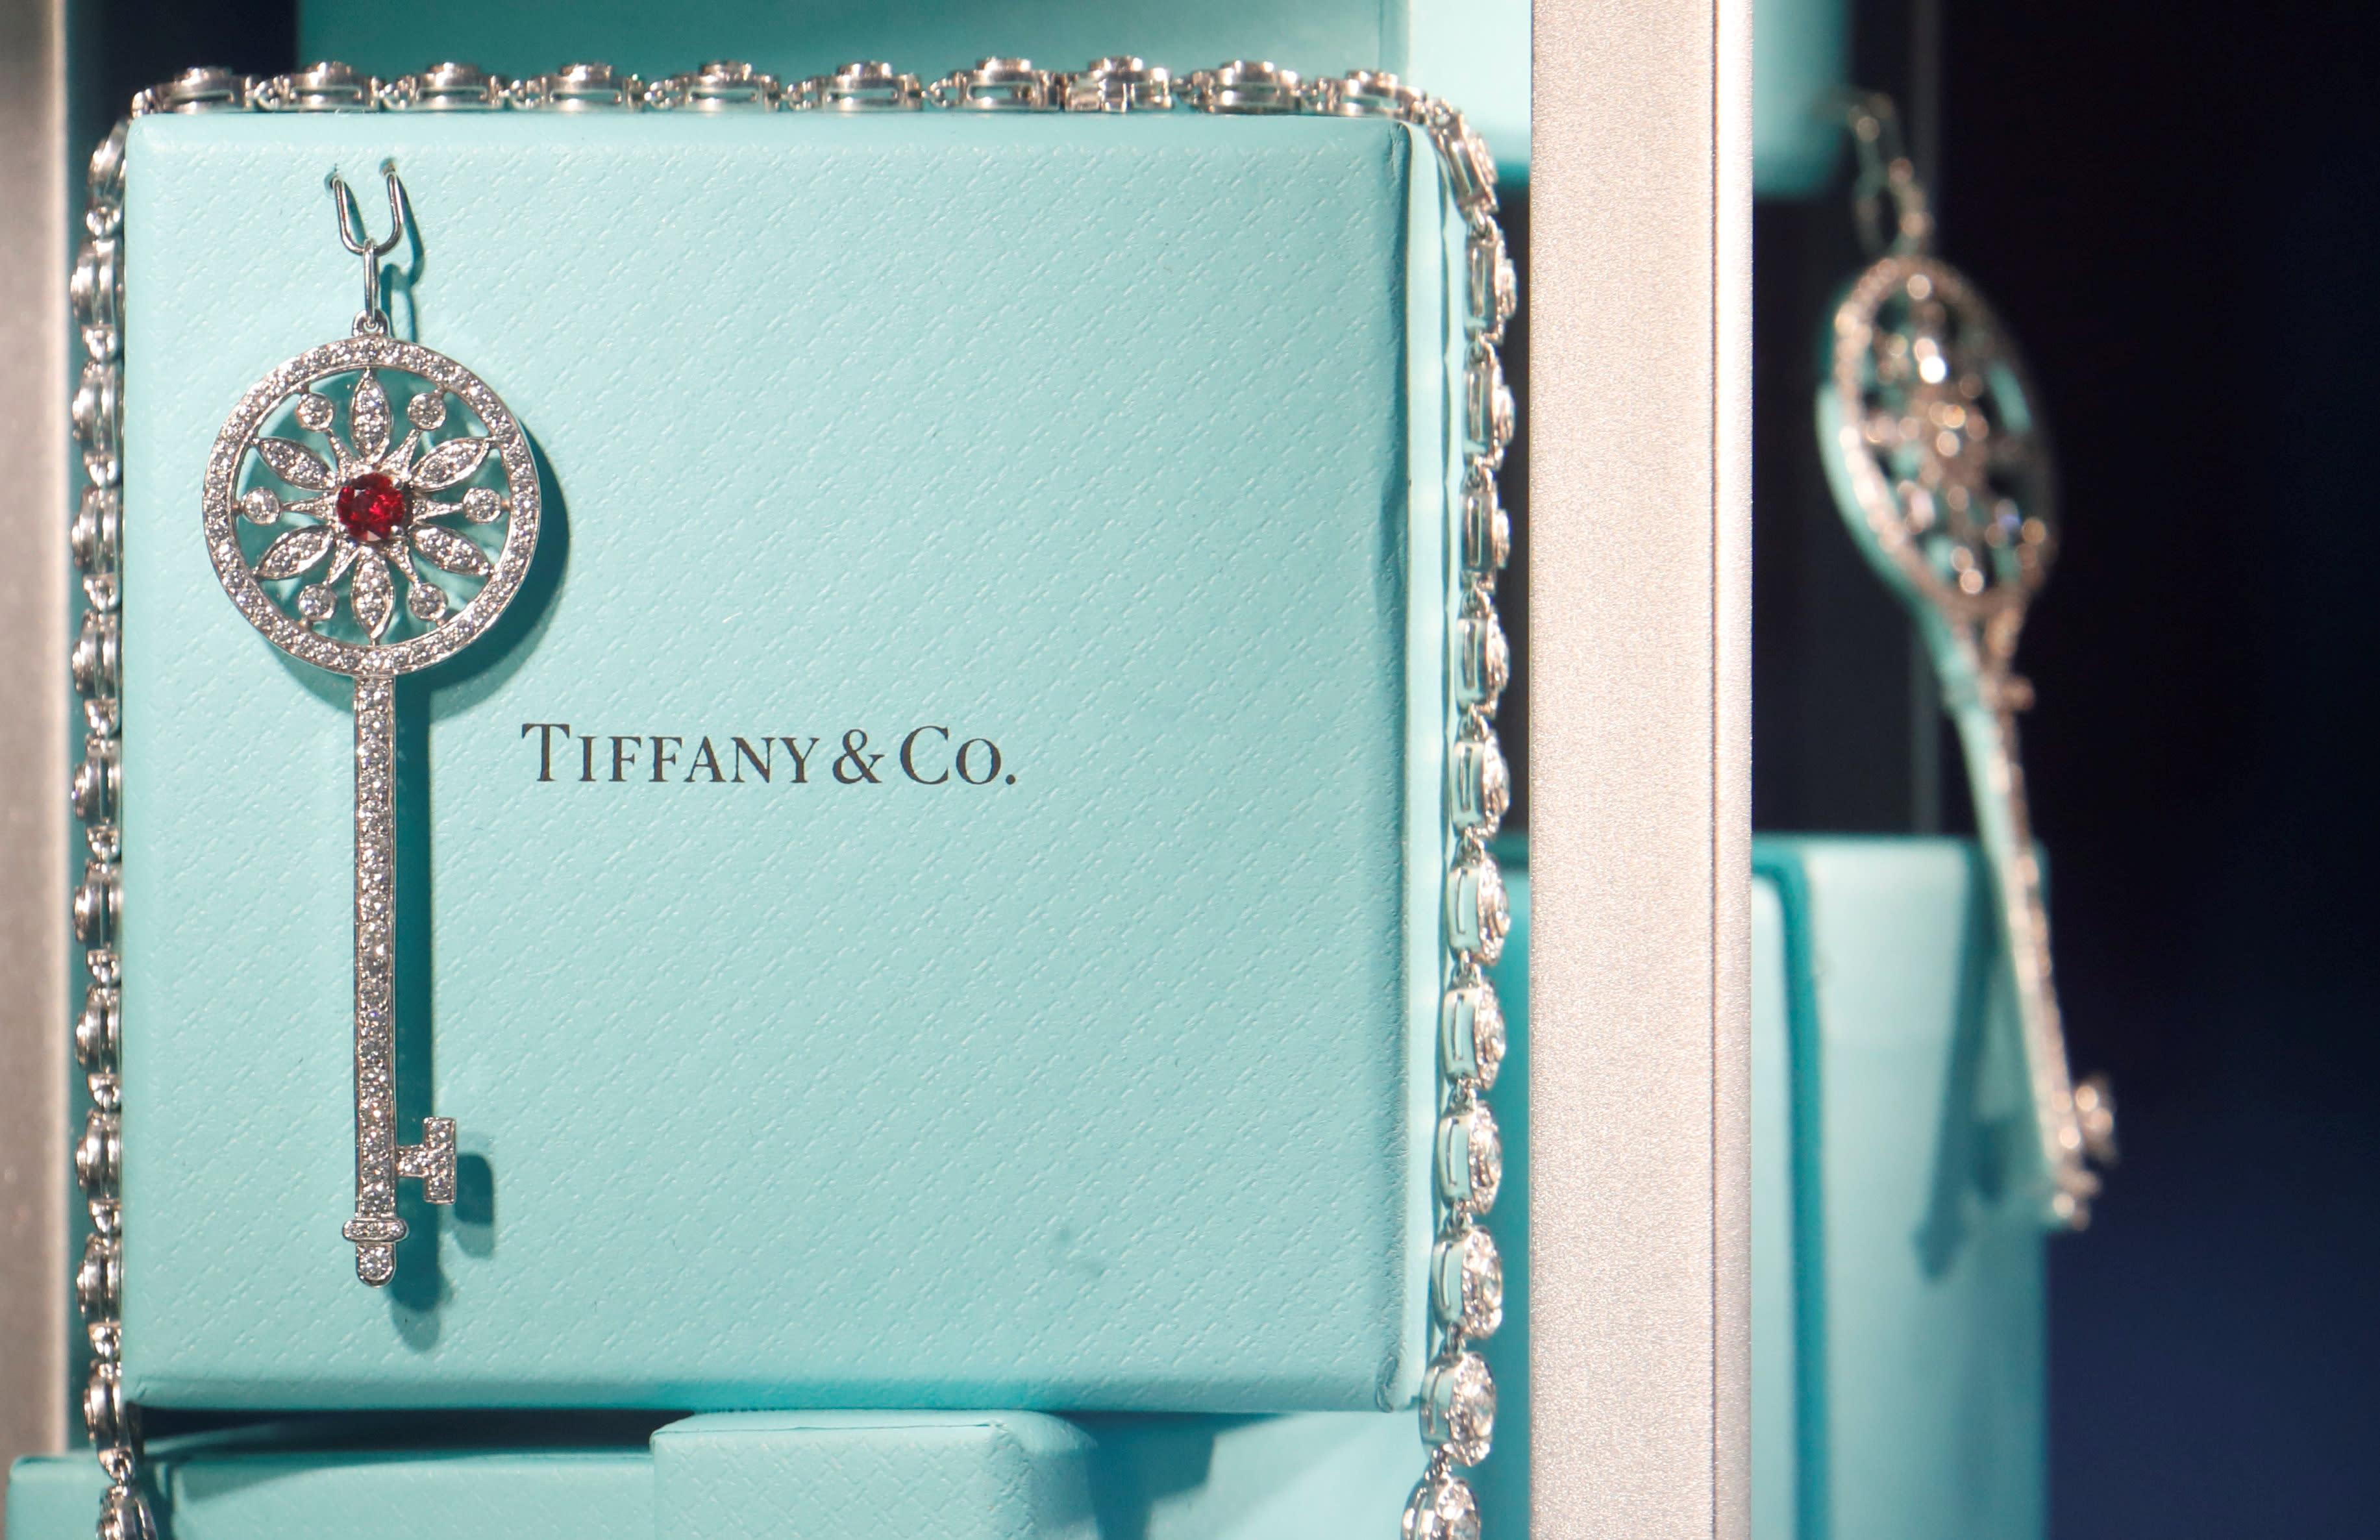 Louis Vuitton parent company LVMH announces acquisition of Tiffany & Co.